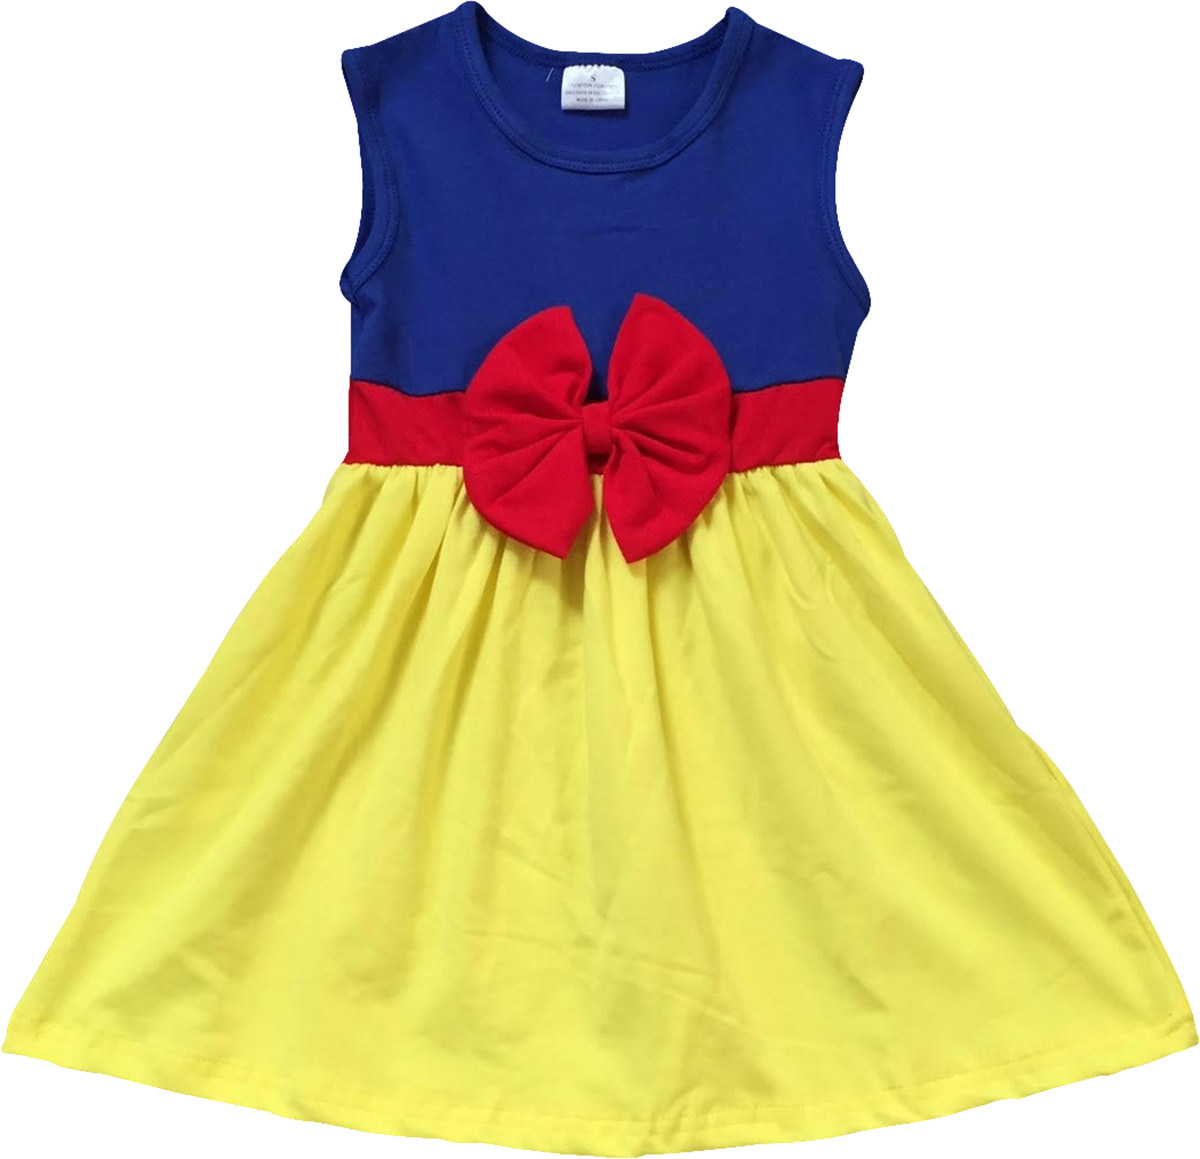 Little Flower Girl Kids Cute Sleeveless Bow Summer Party Flower Girl Dress Yellow 5 L 201280 BNY Corner - image 1 of 1